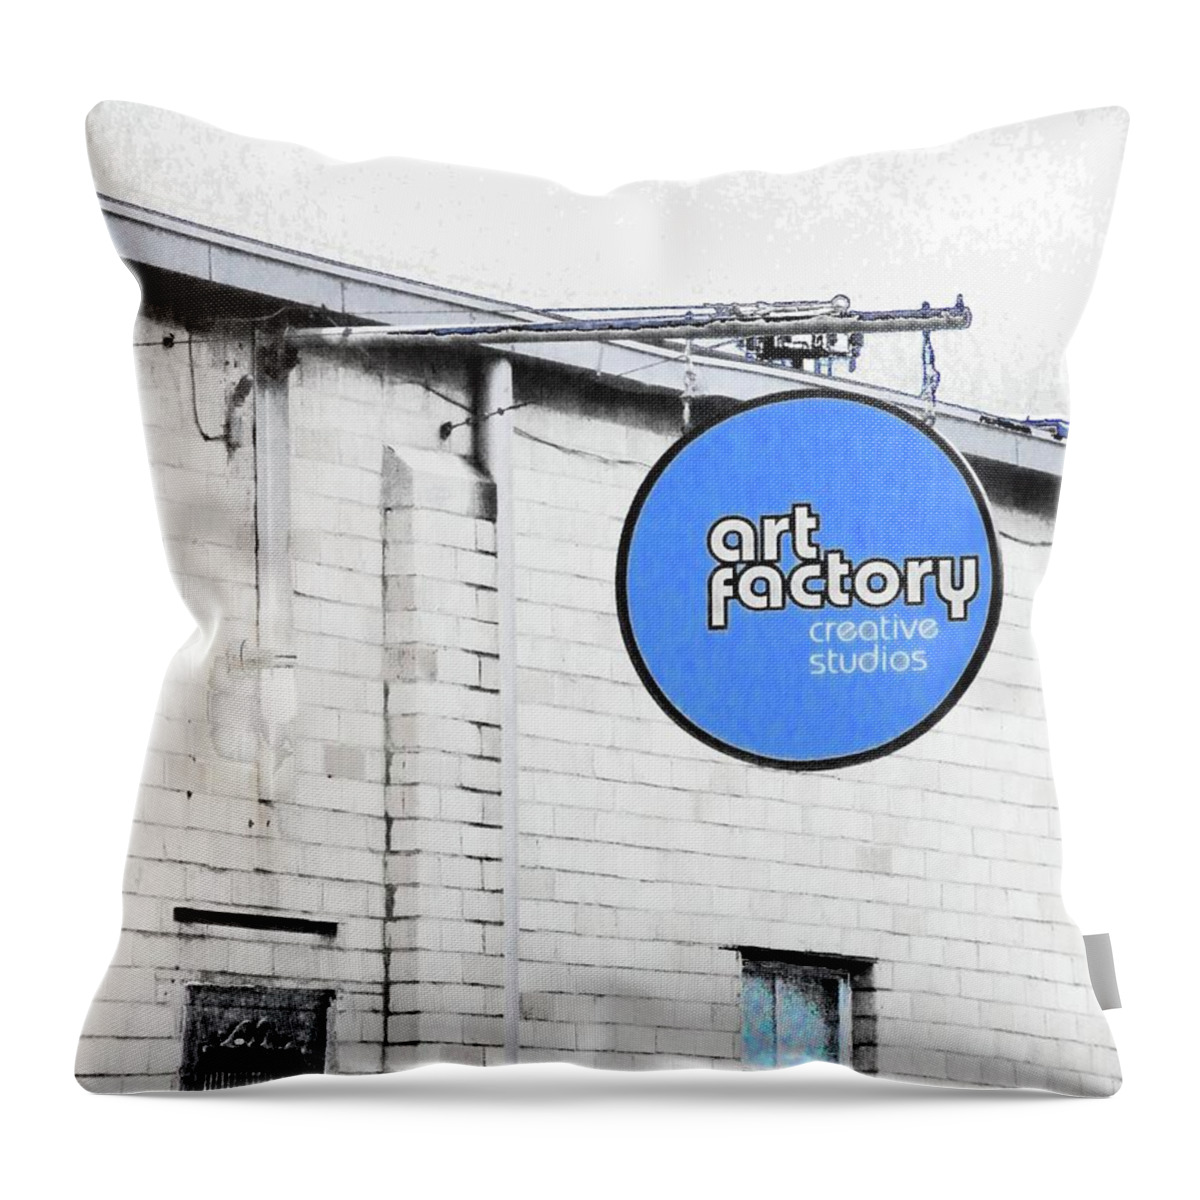 Art Studio Throw Pillow featuring the digital art Art Factory by Lizi Beard-Ward